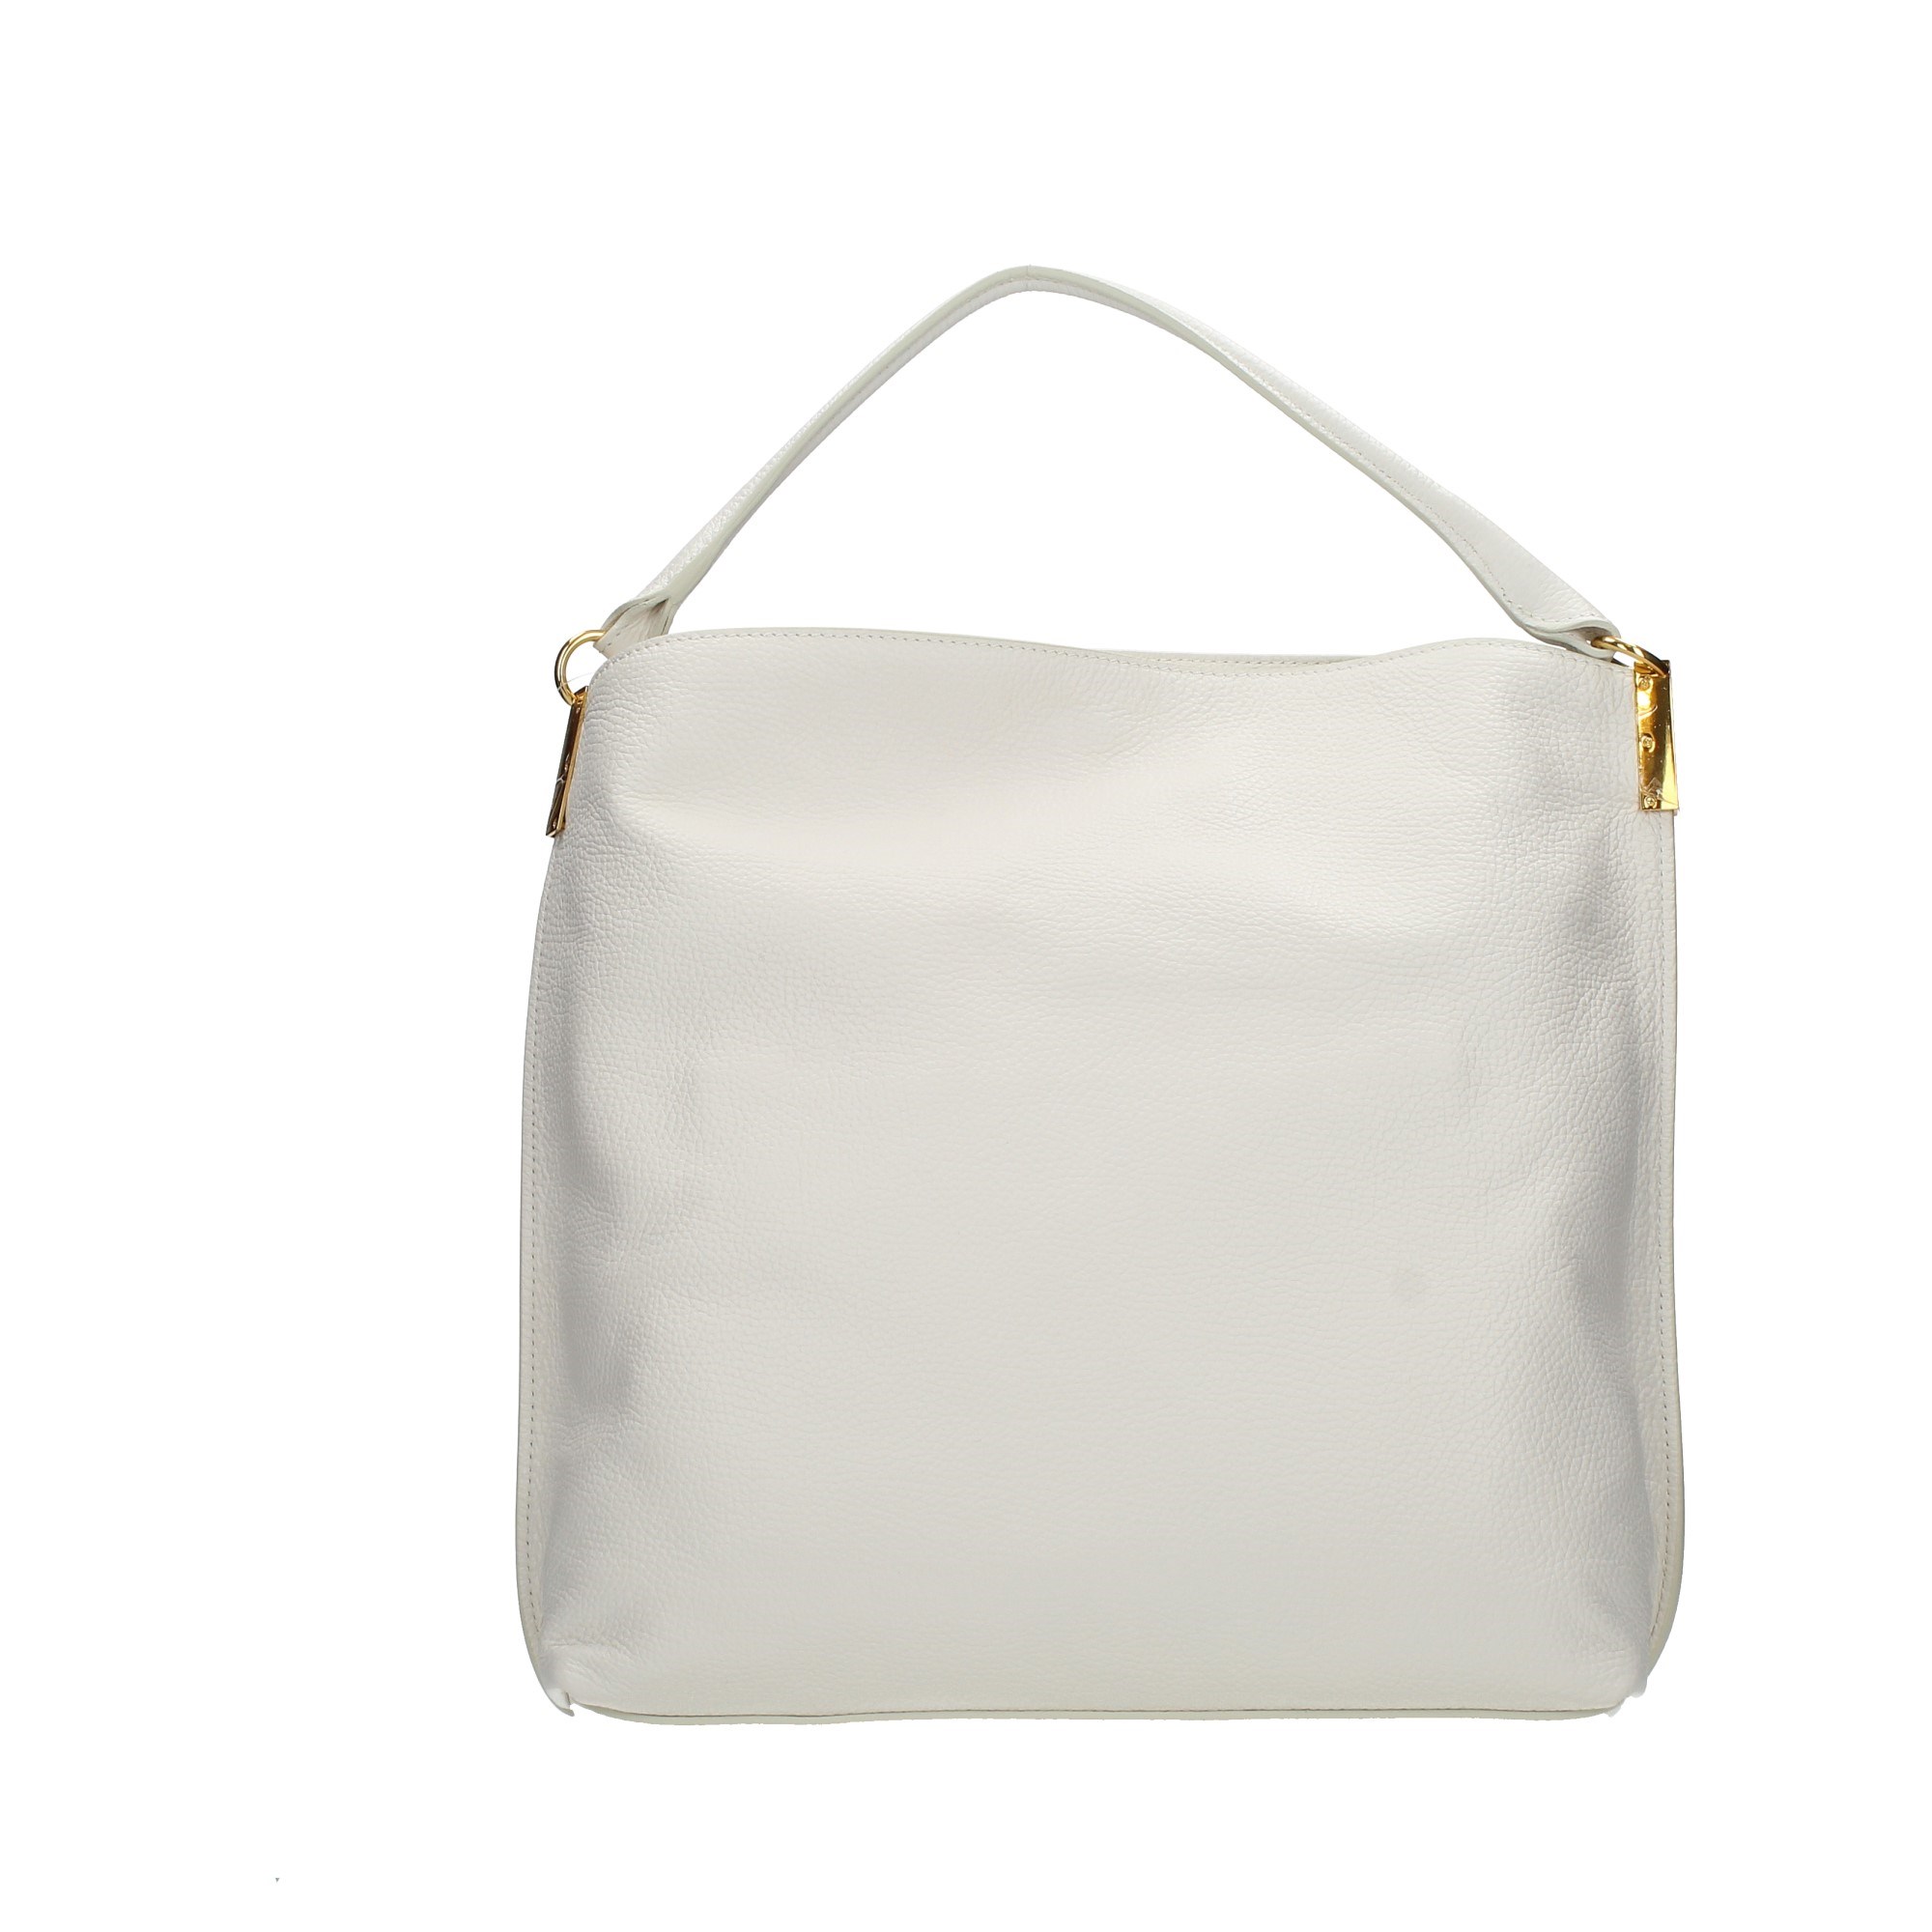 Coccinelle Accessories Women Shoulder Bags M3A 130201